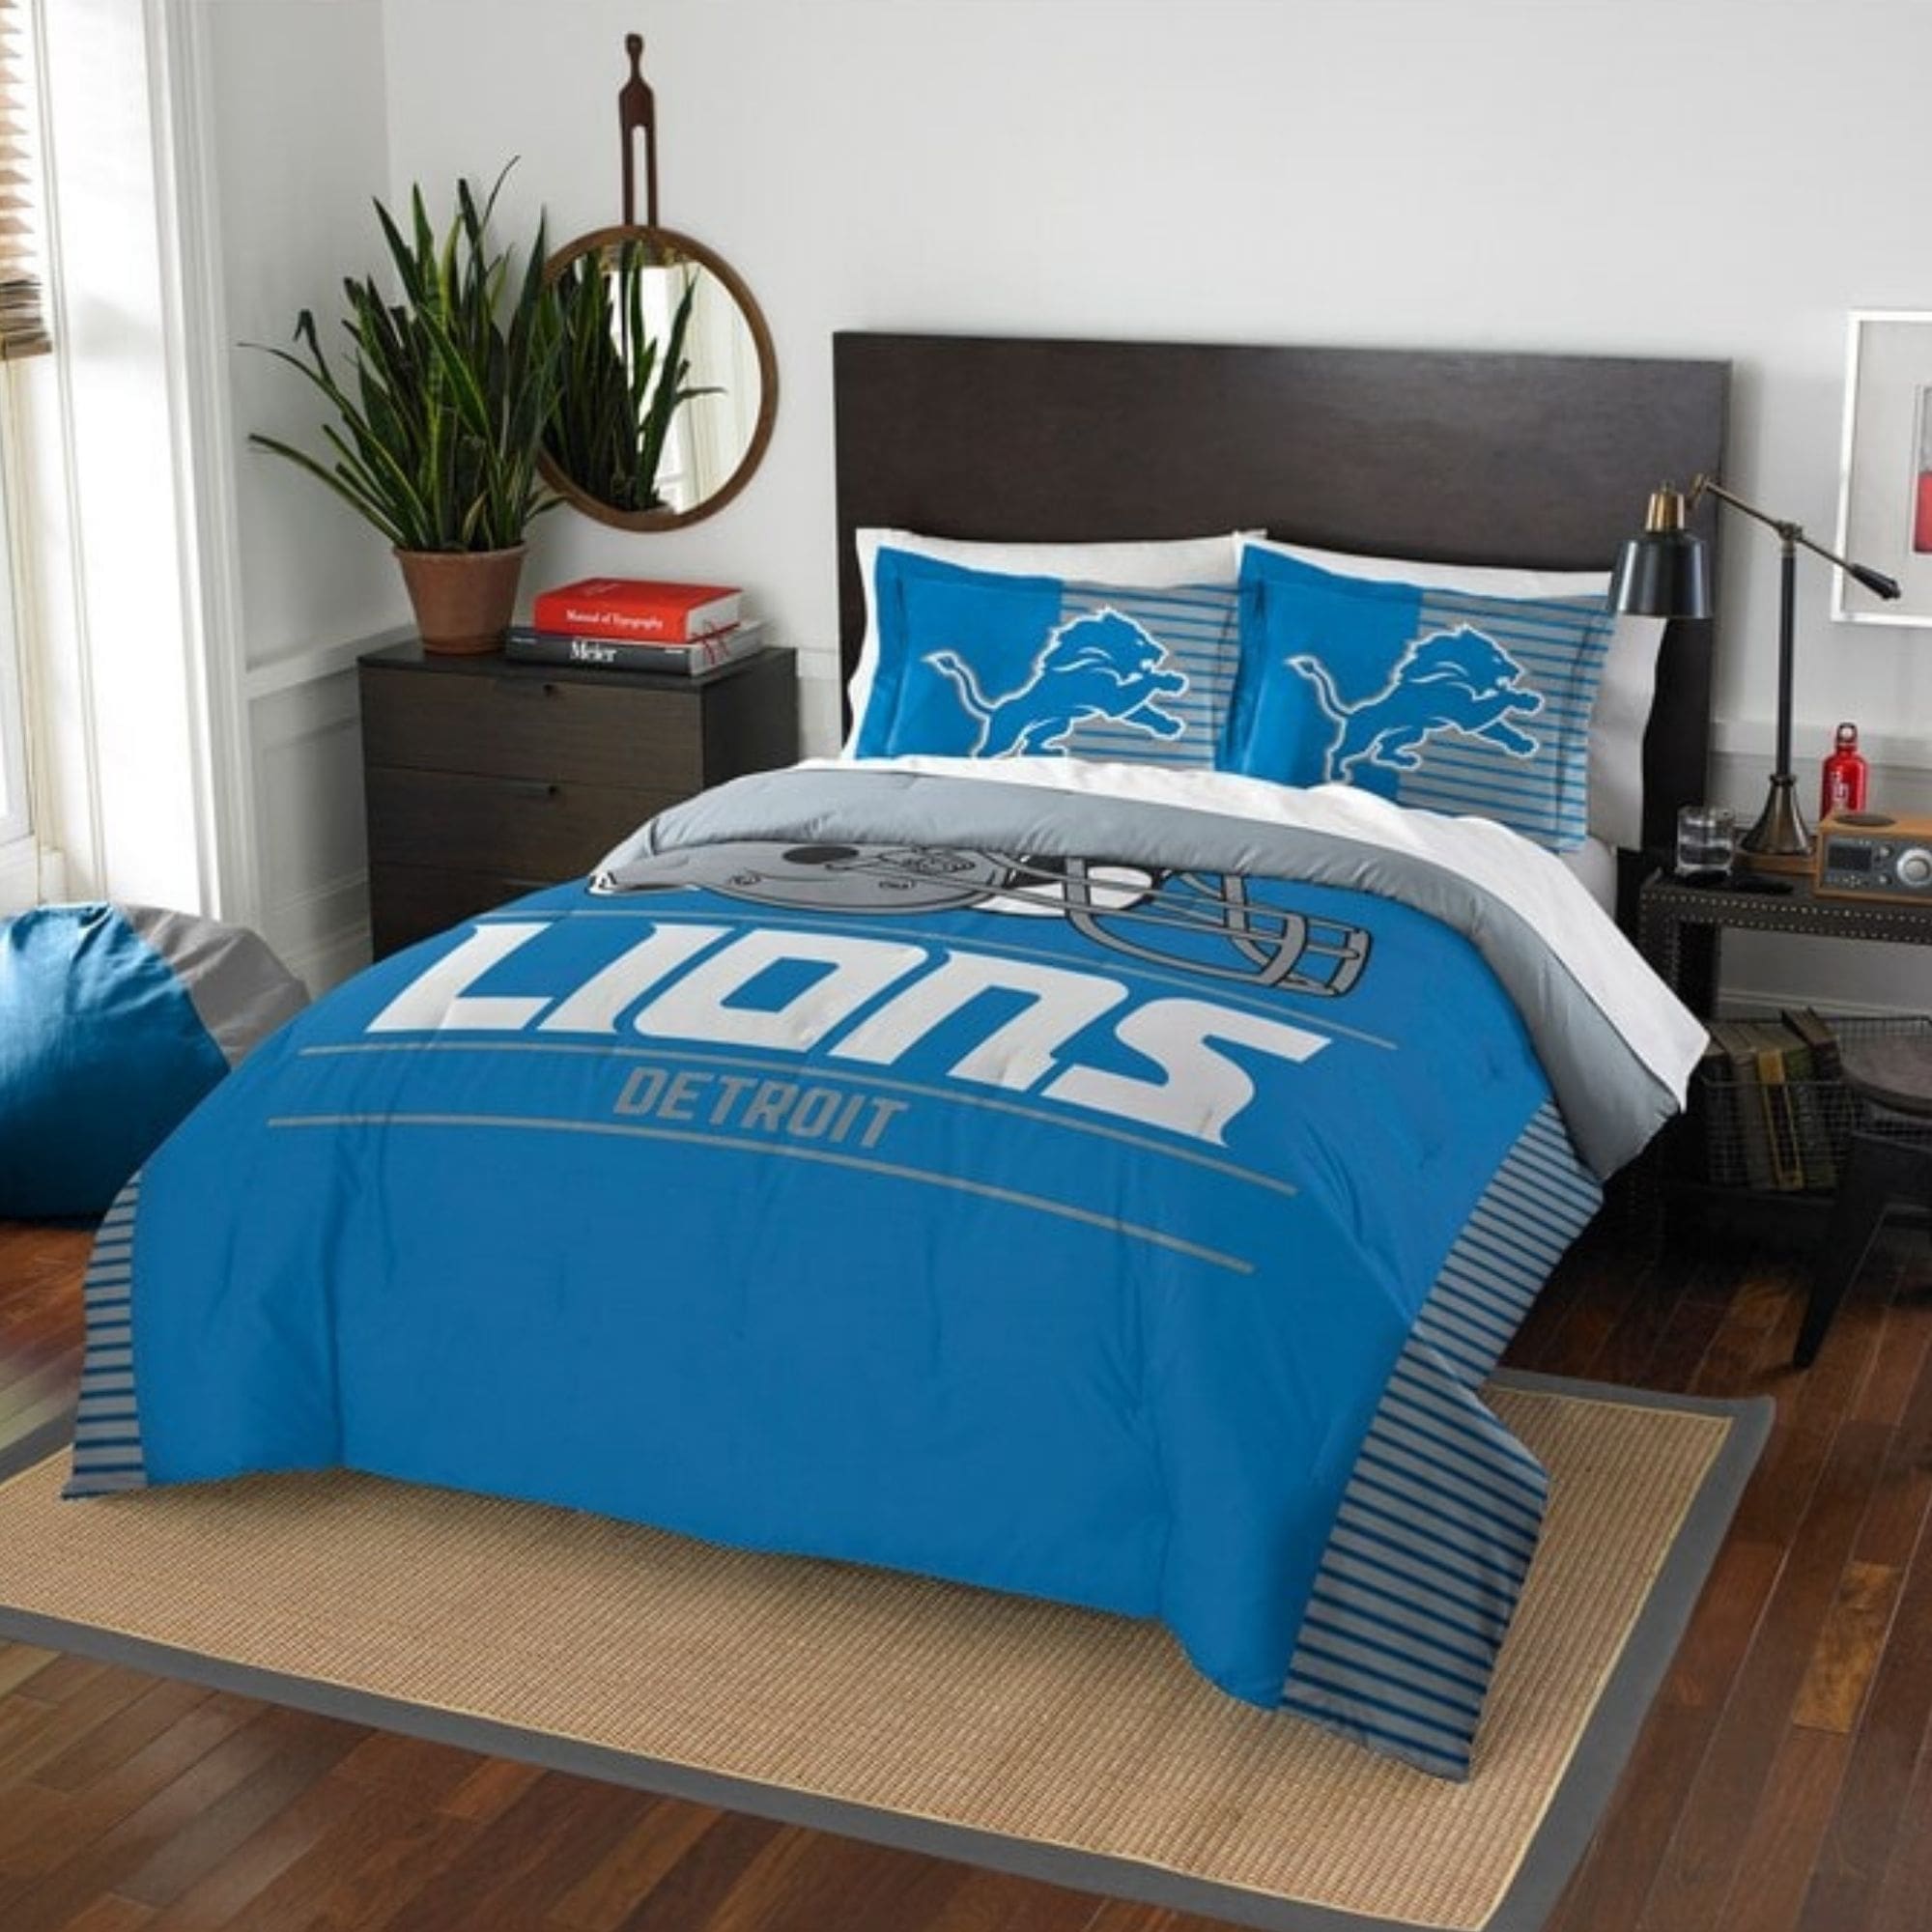 Detroit Lions Bedding Sets